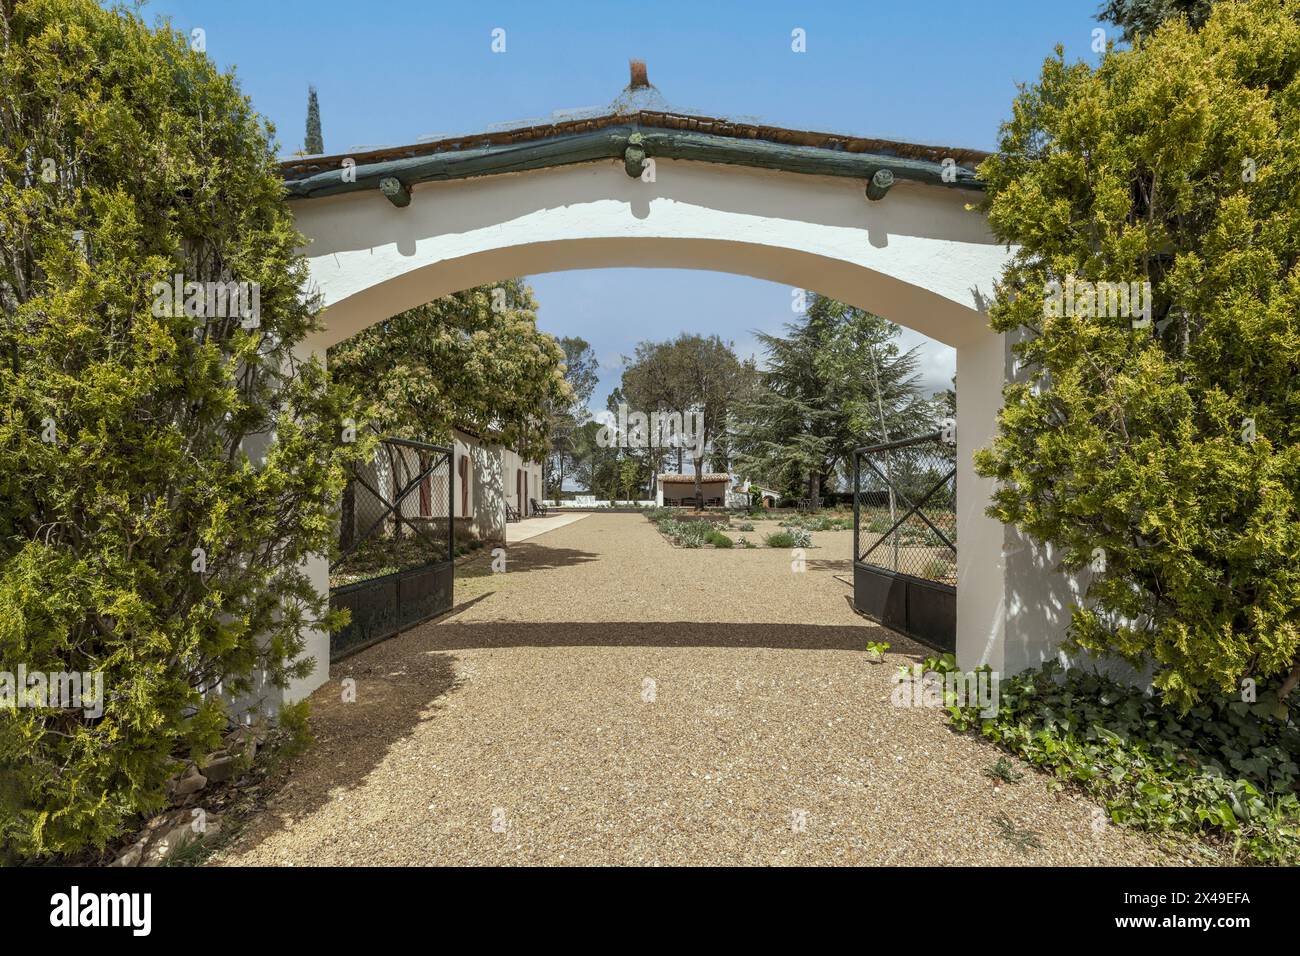 Arco d'ingresso nel recinto perimetrale di una casa di campagna in stile andaluso con pareti bianche, sentieri di ghiaia e una grande varietà di alberi Foto Stock